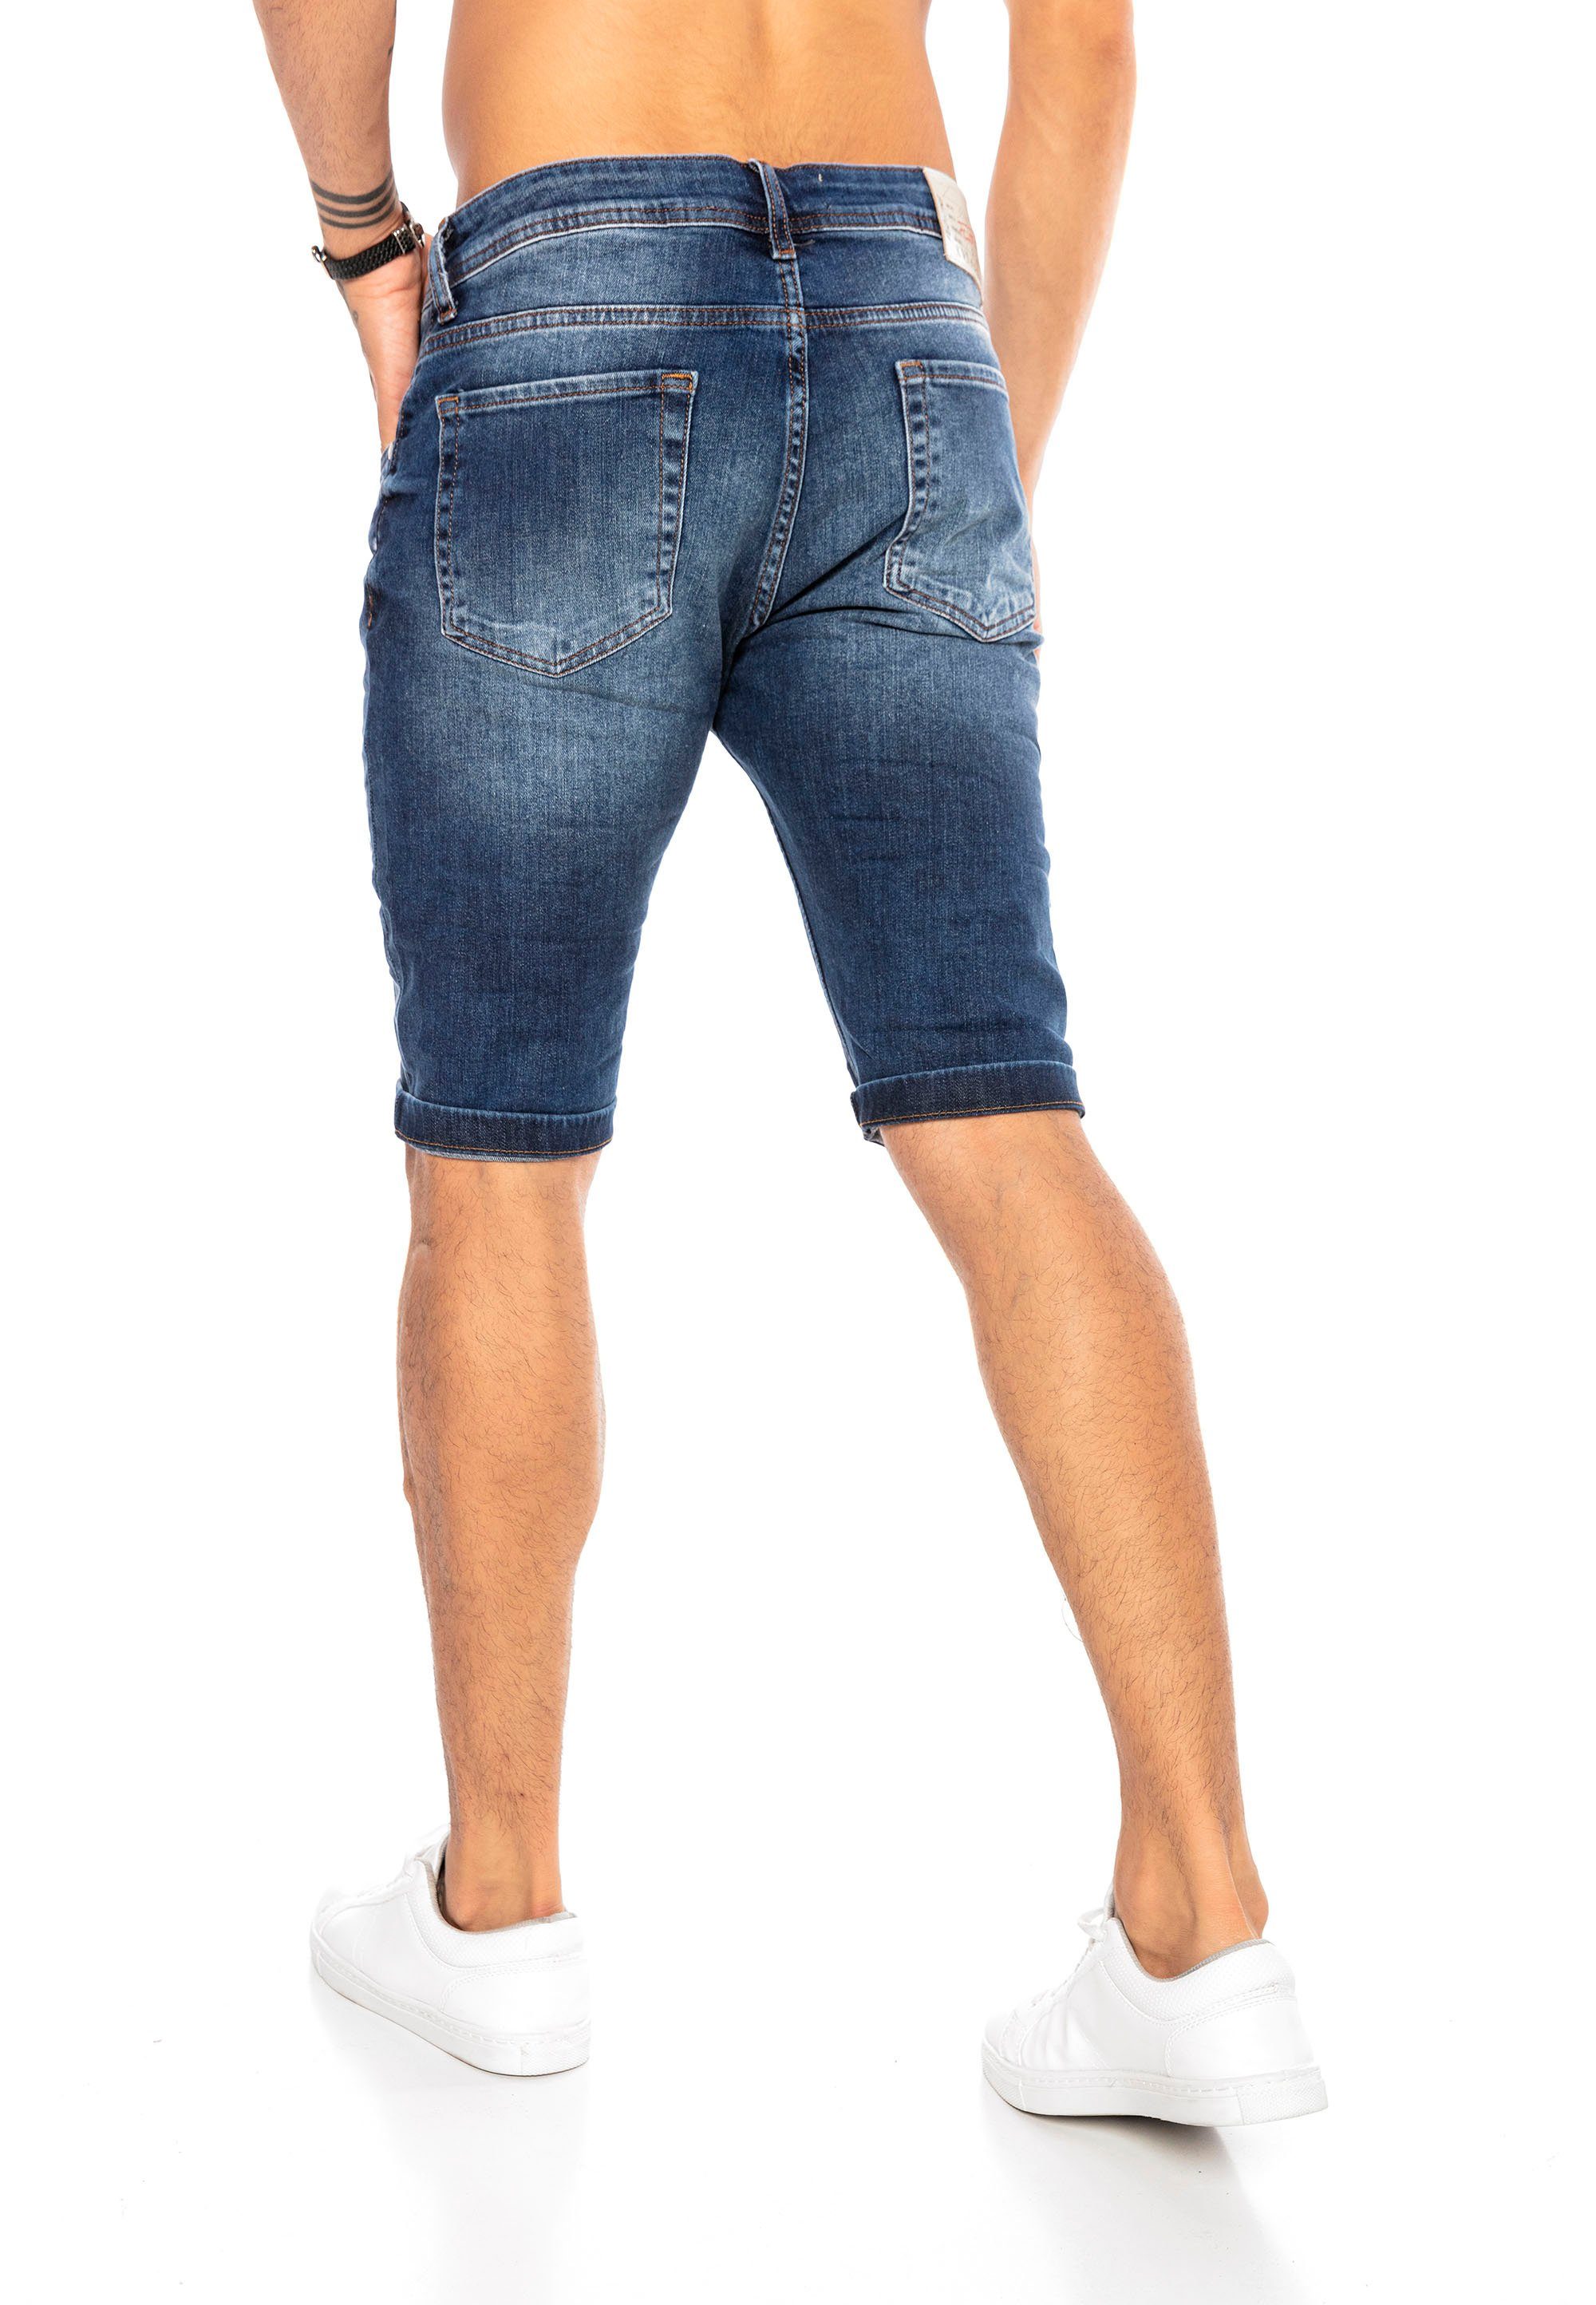 RedBridge Shorts mit trendigen Destroyed-Elementen blau